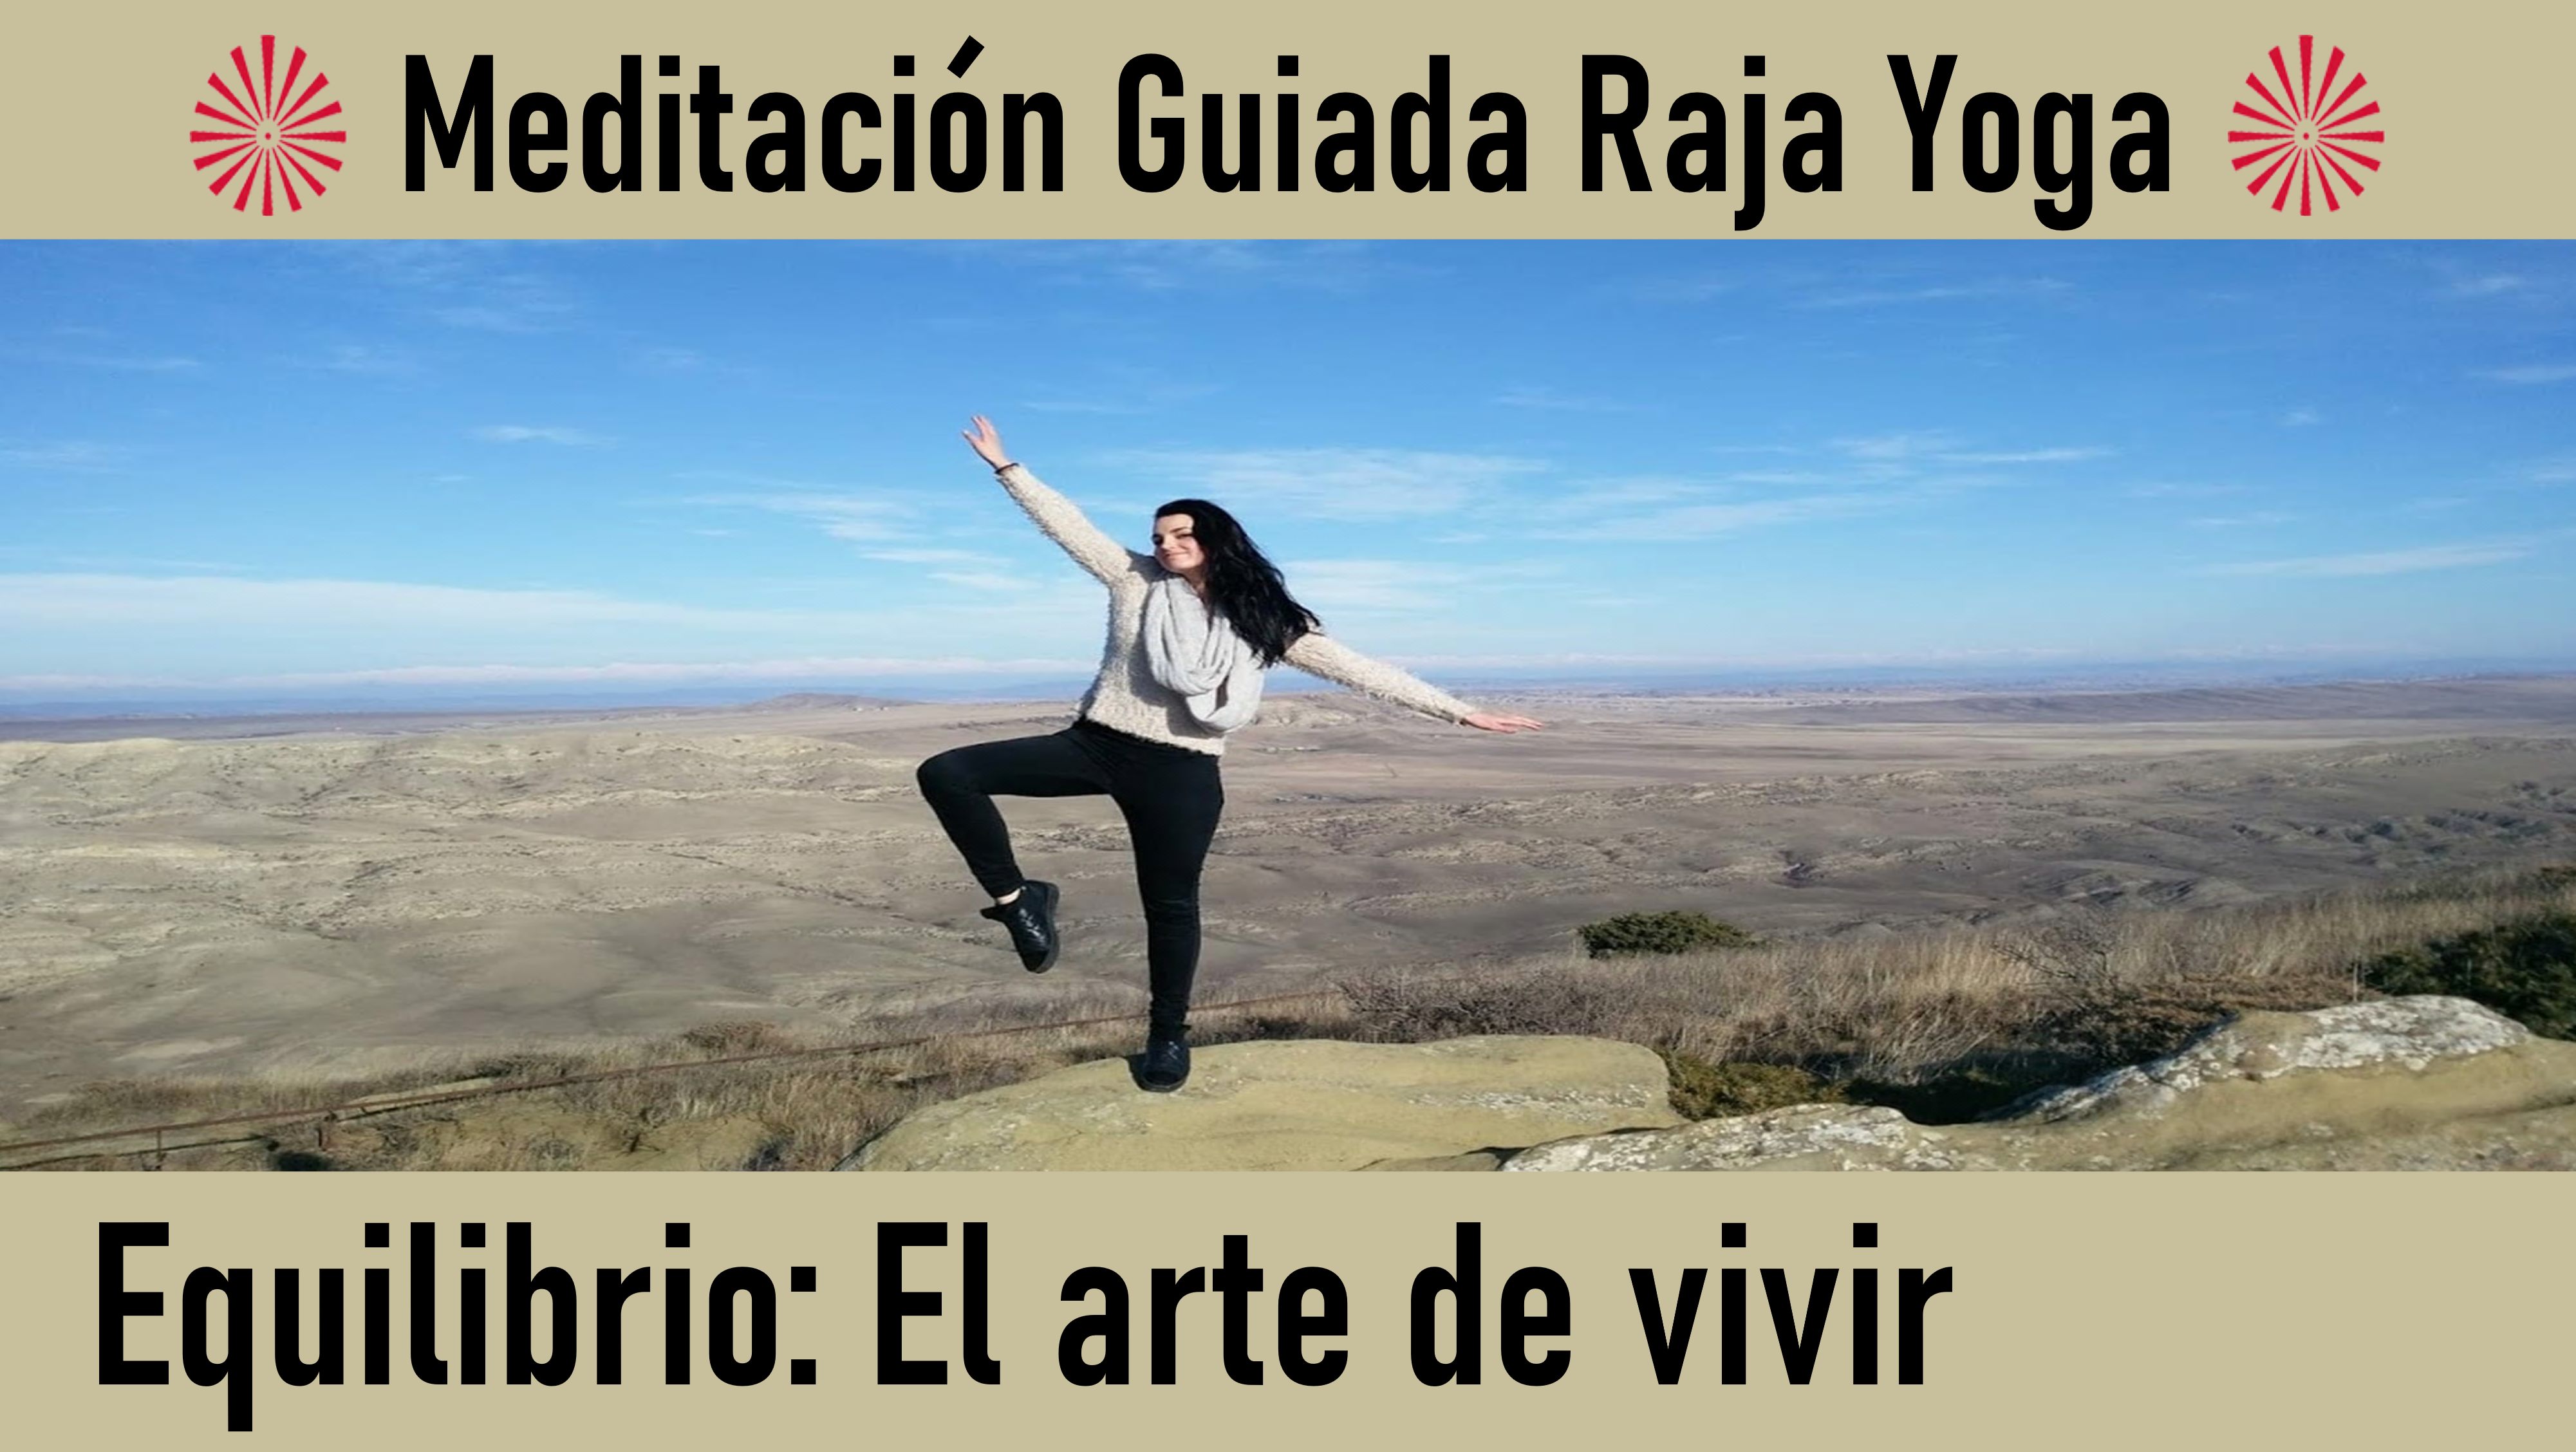 Meditación Raja Yoga: Equilibrio  El arte de vivir (3 Junio 2020) On-line desde Sevilla